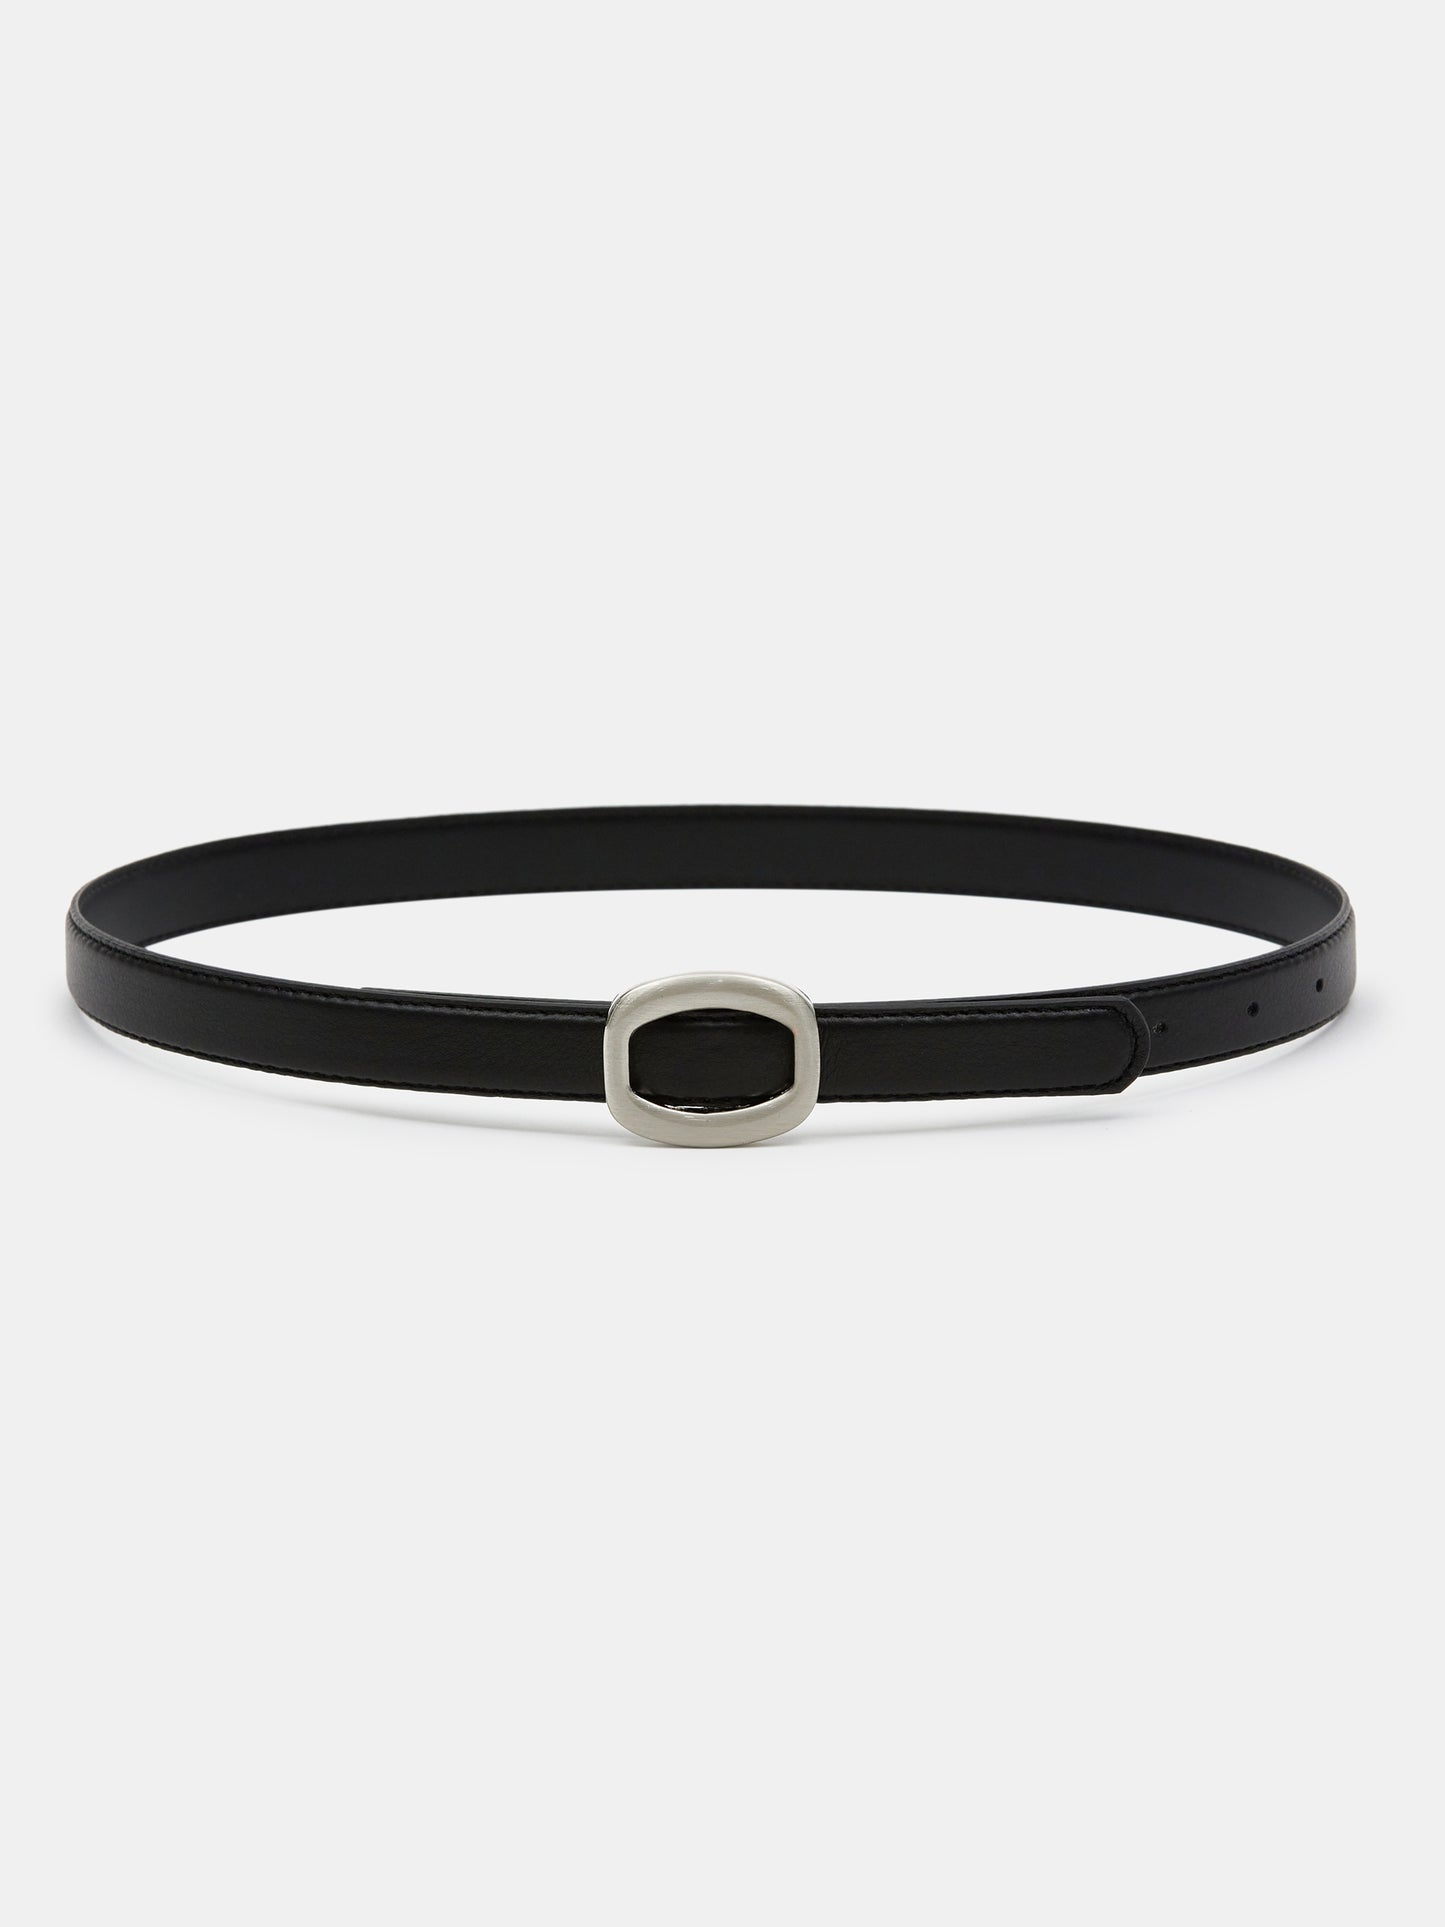 Round Hexagon Leather Belt, Black/Silver